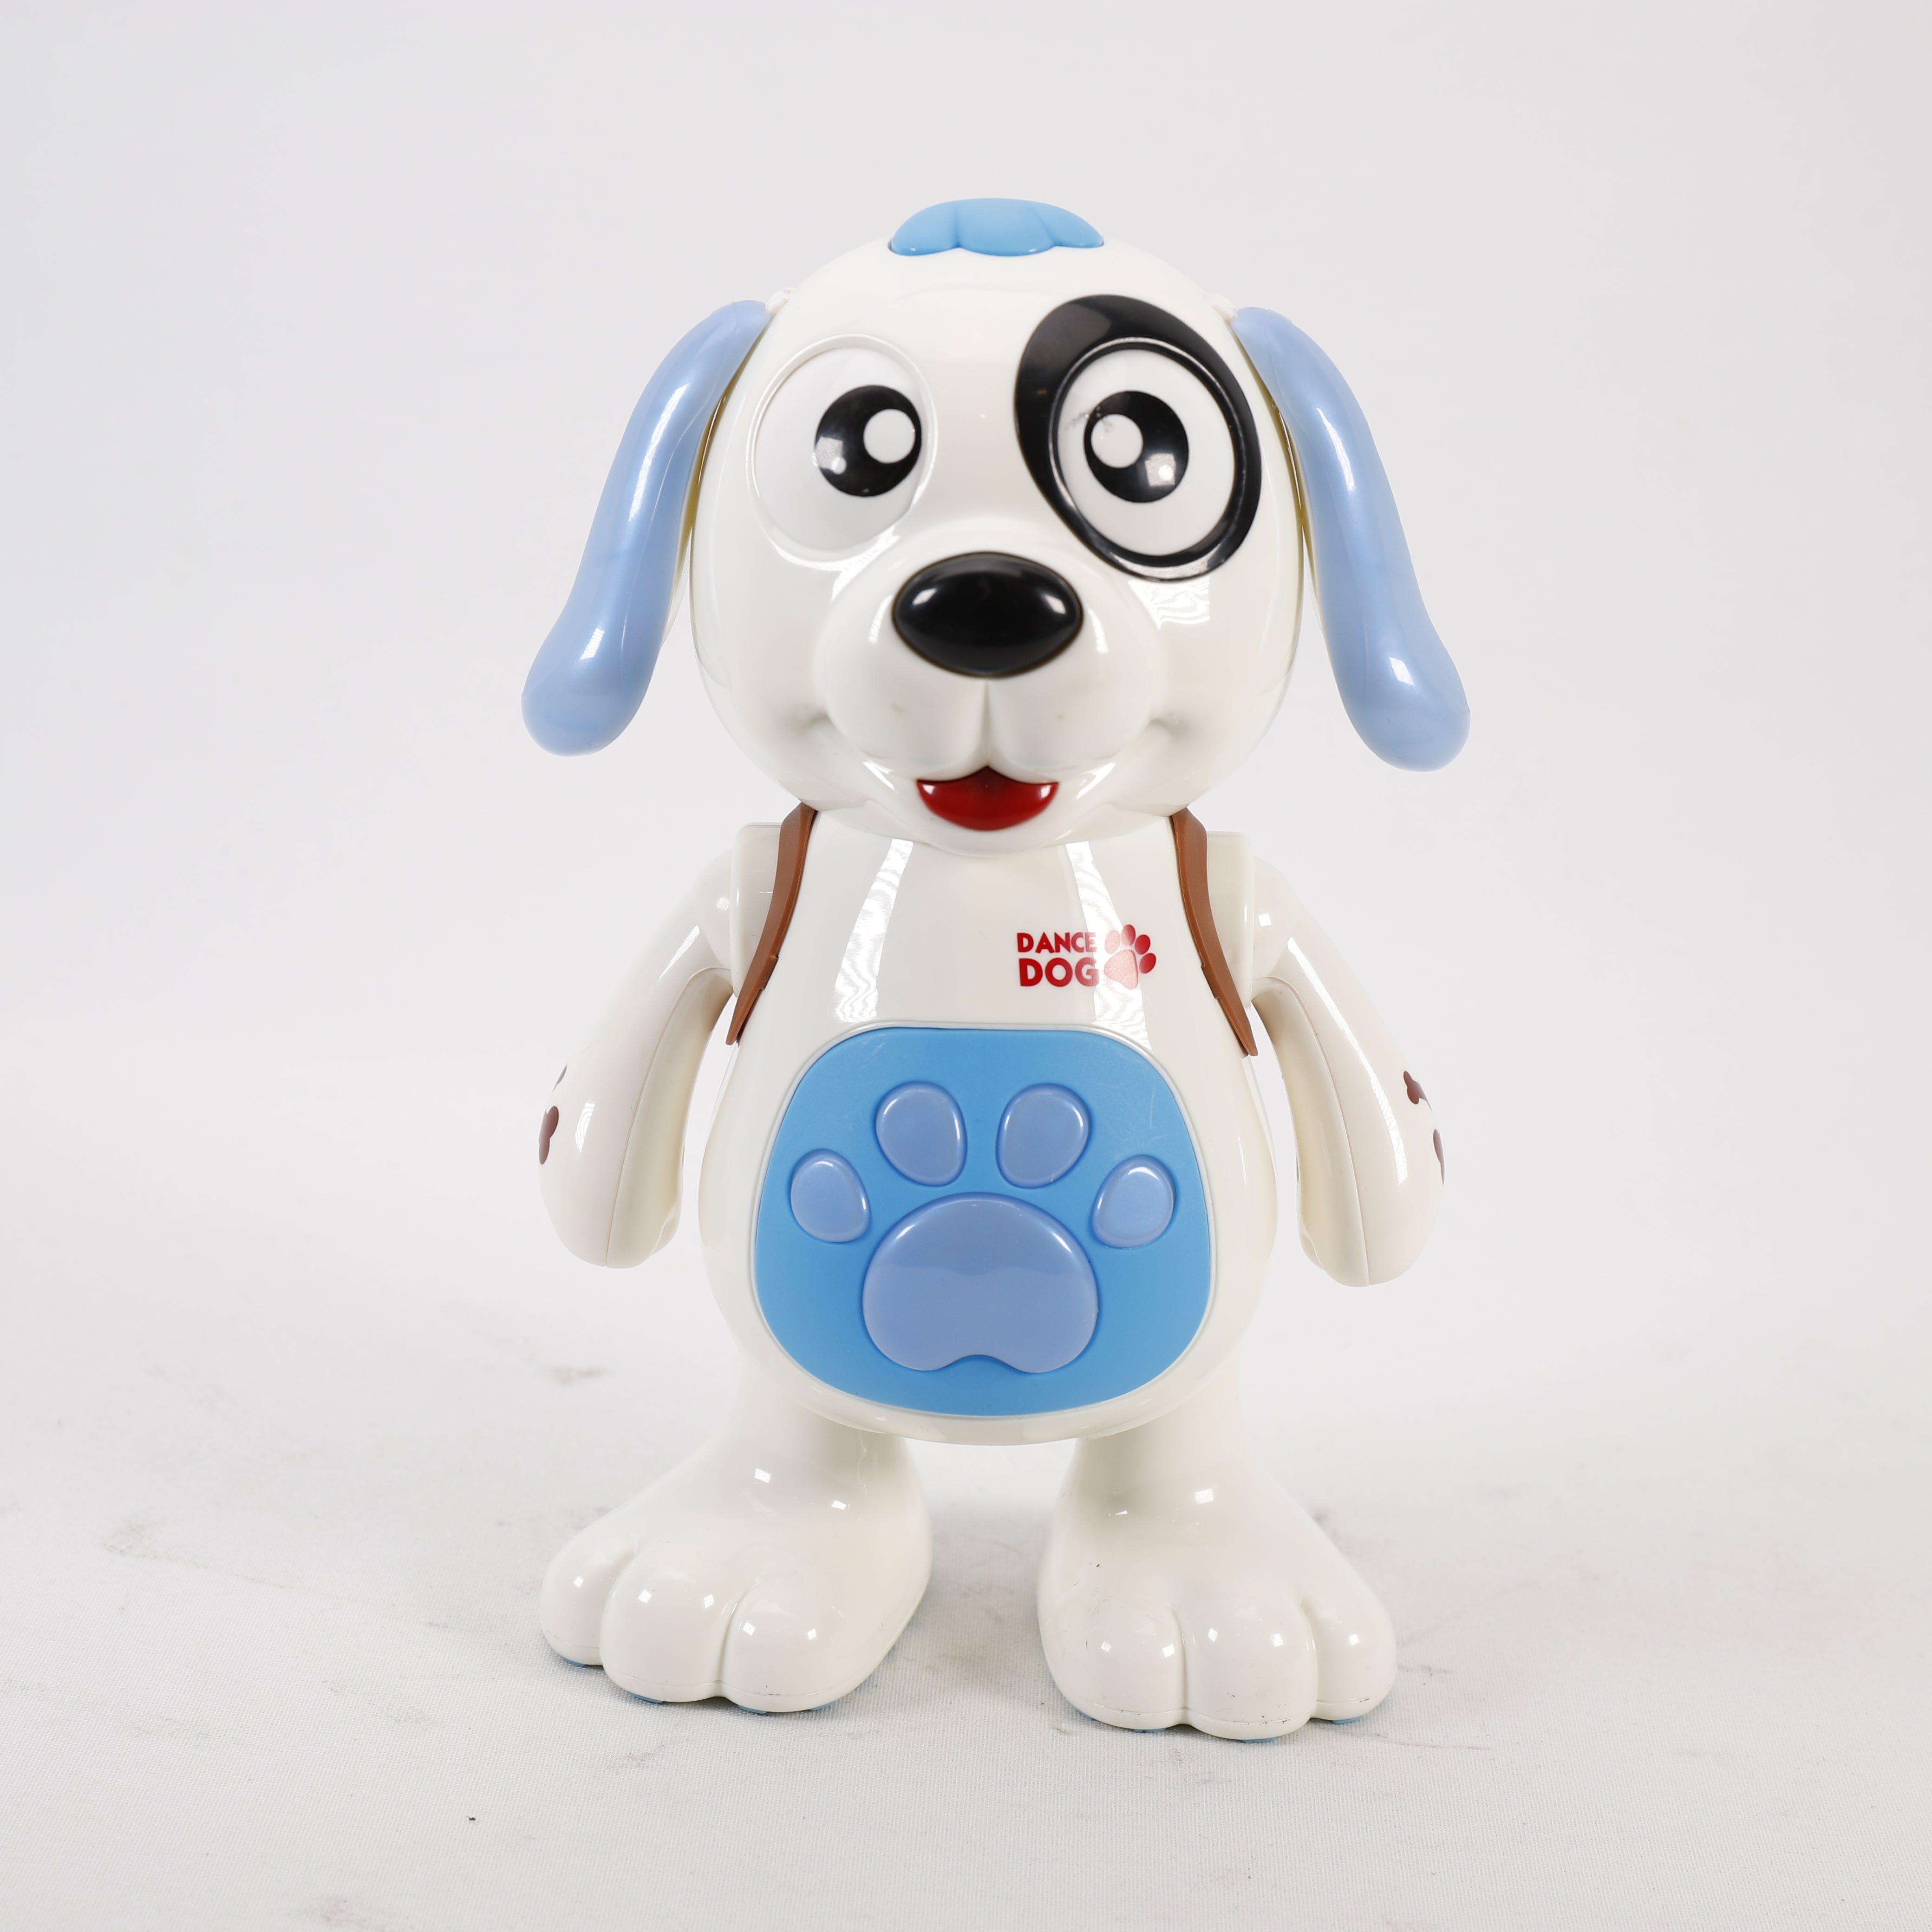 Roboter Hundespielzeug, Dance Dog, Elektronisches Tanzen Hund, Kinder Spielzeug.